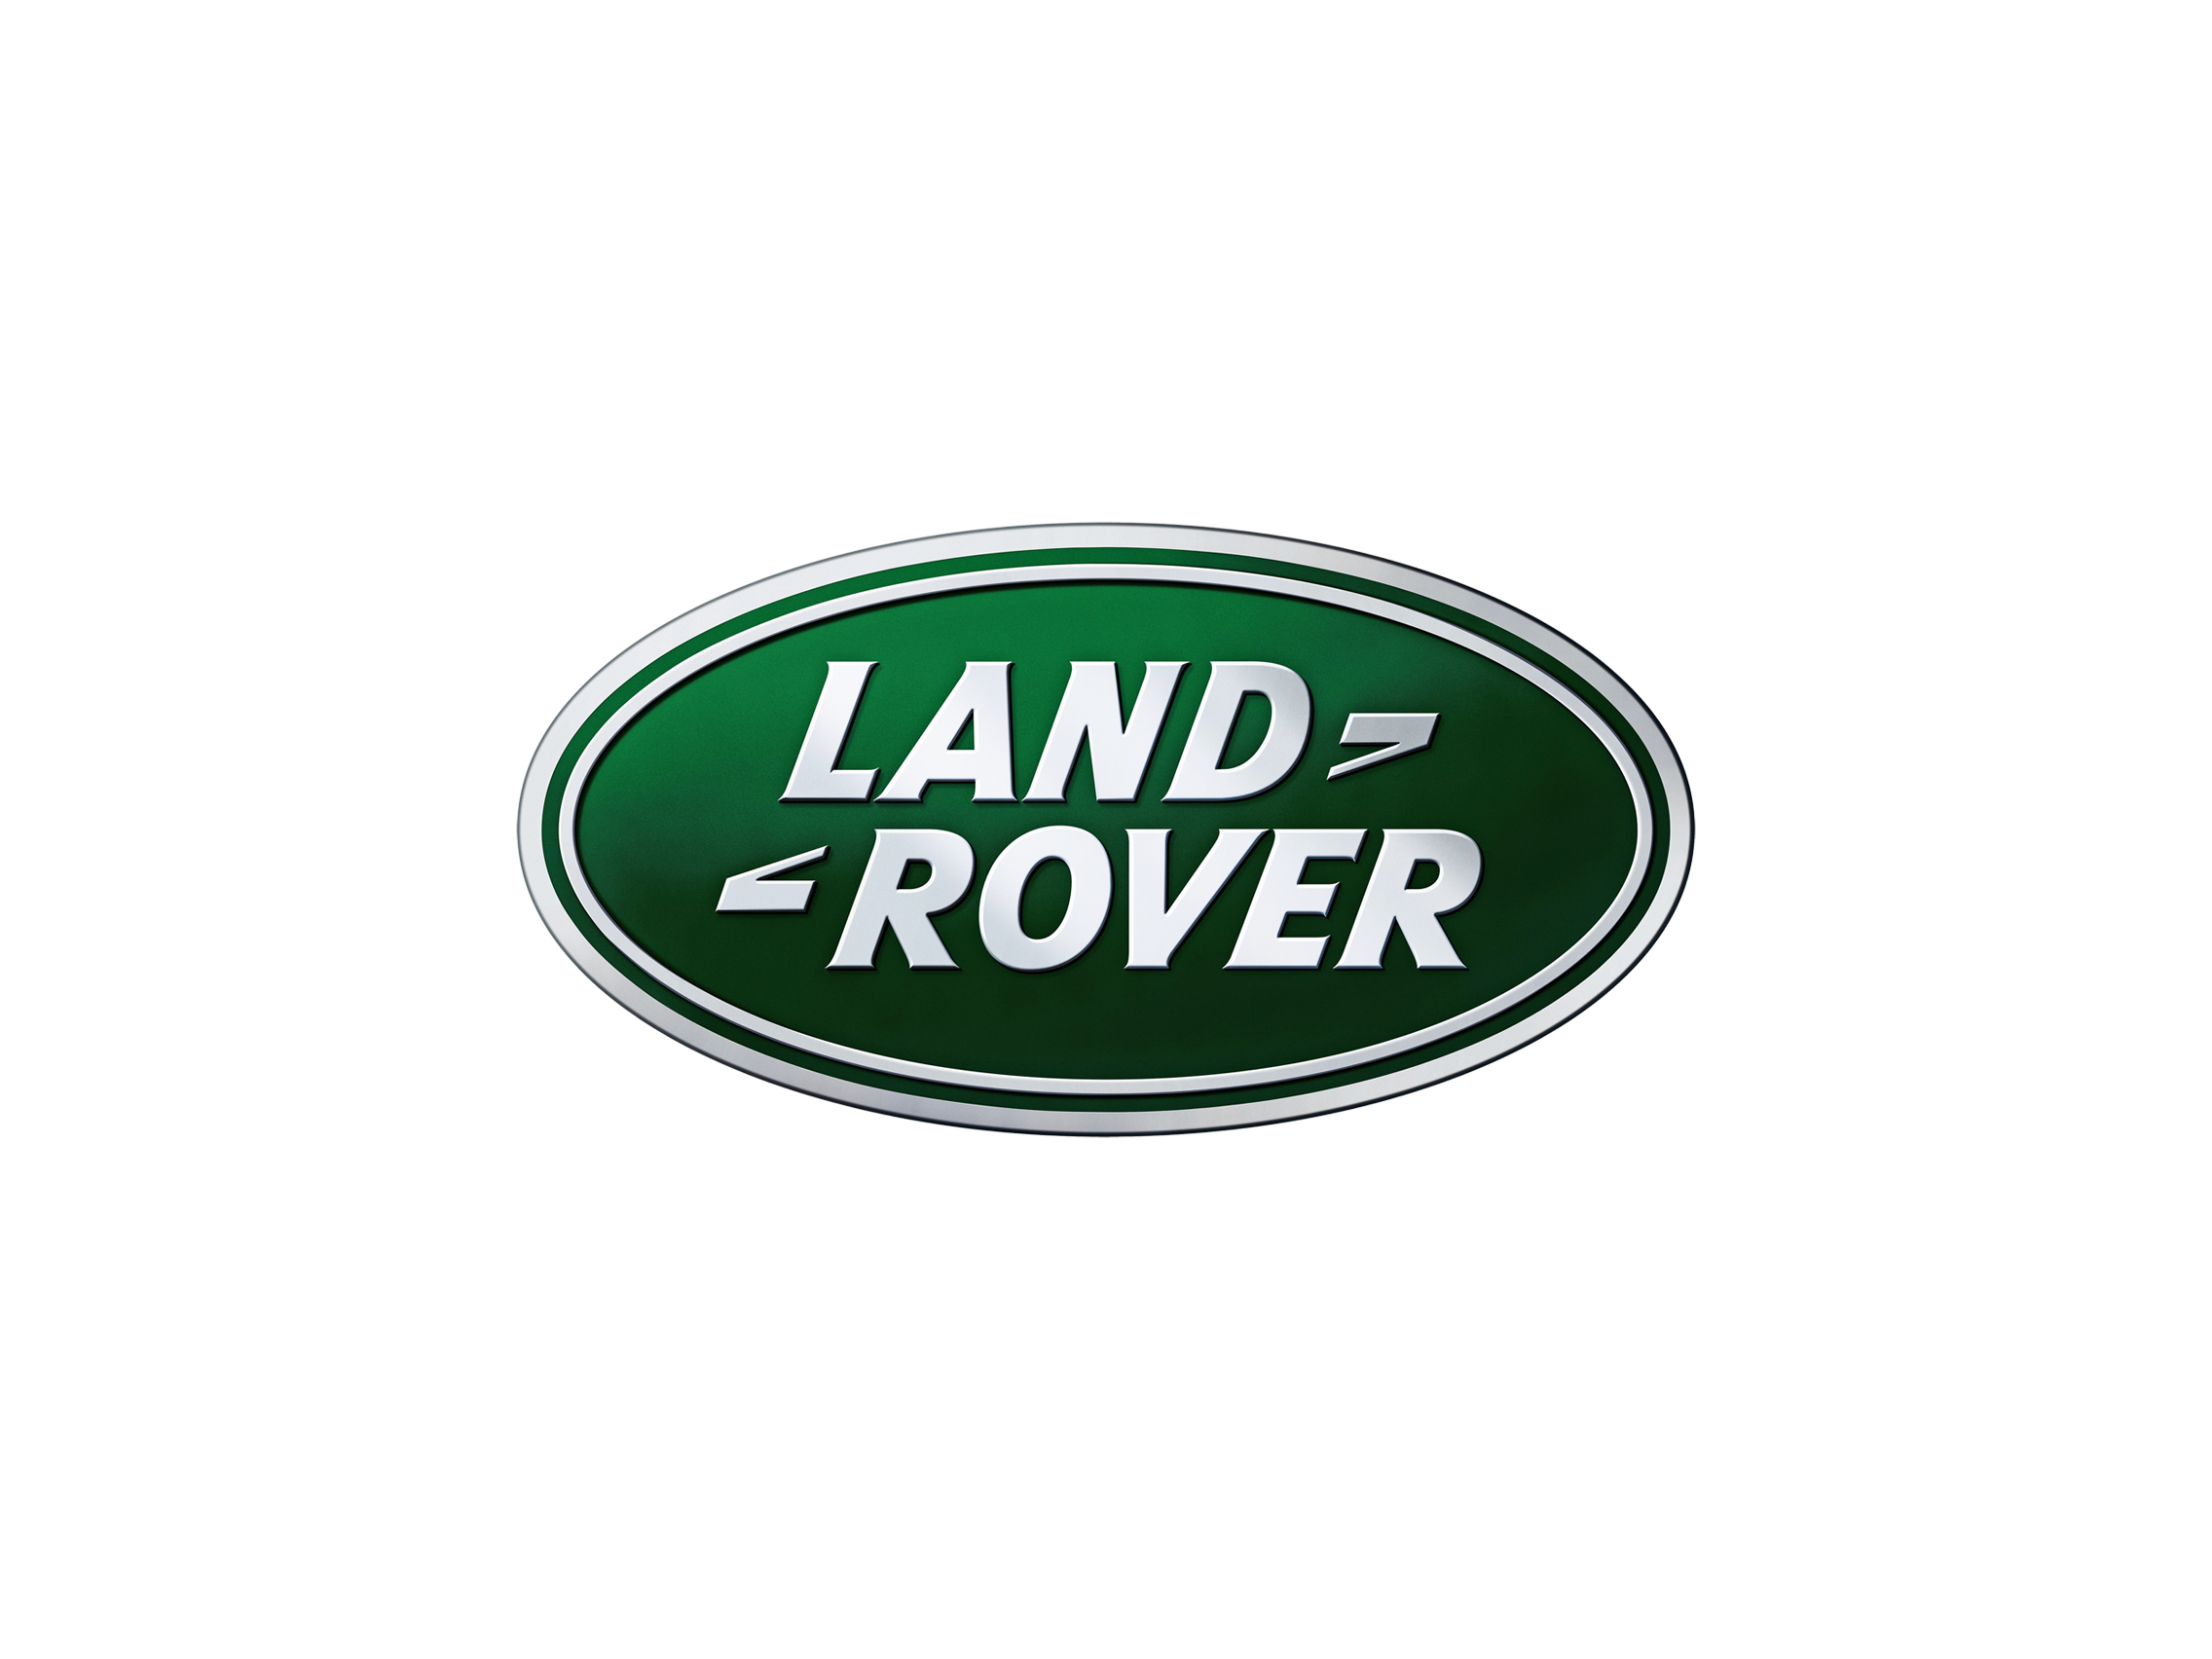 Logotipo de Land Rover PNG